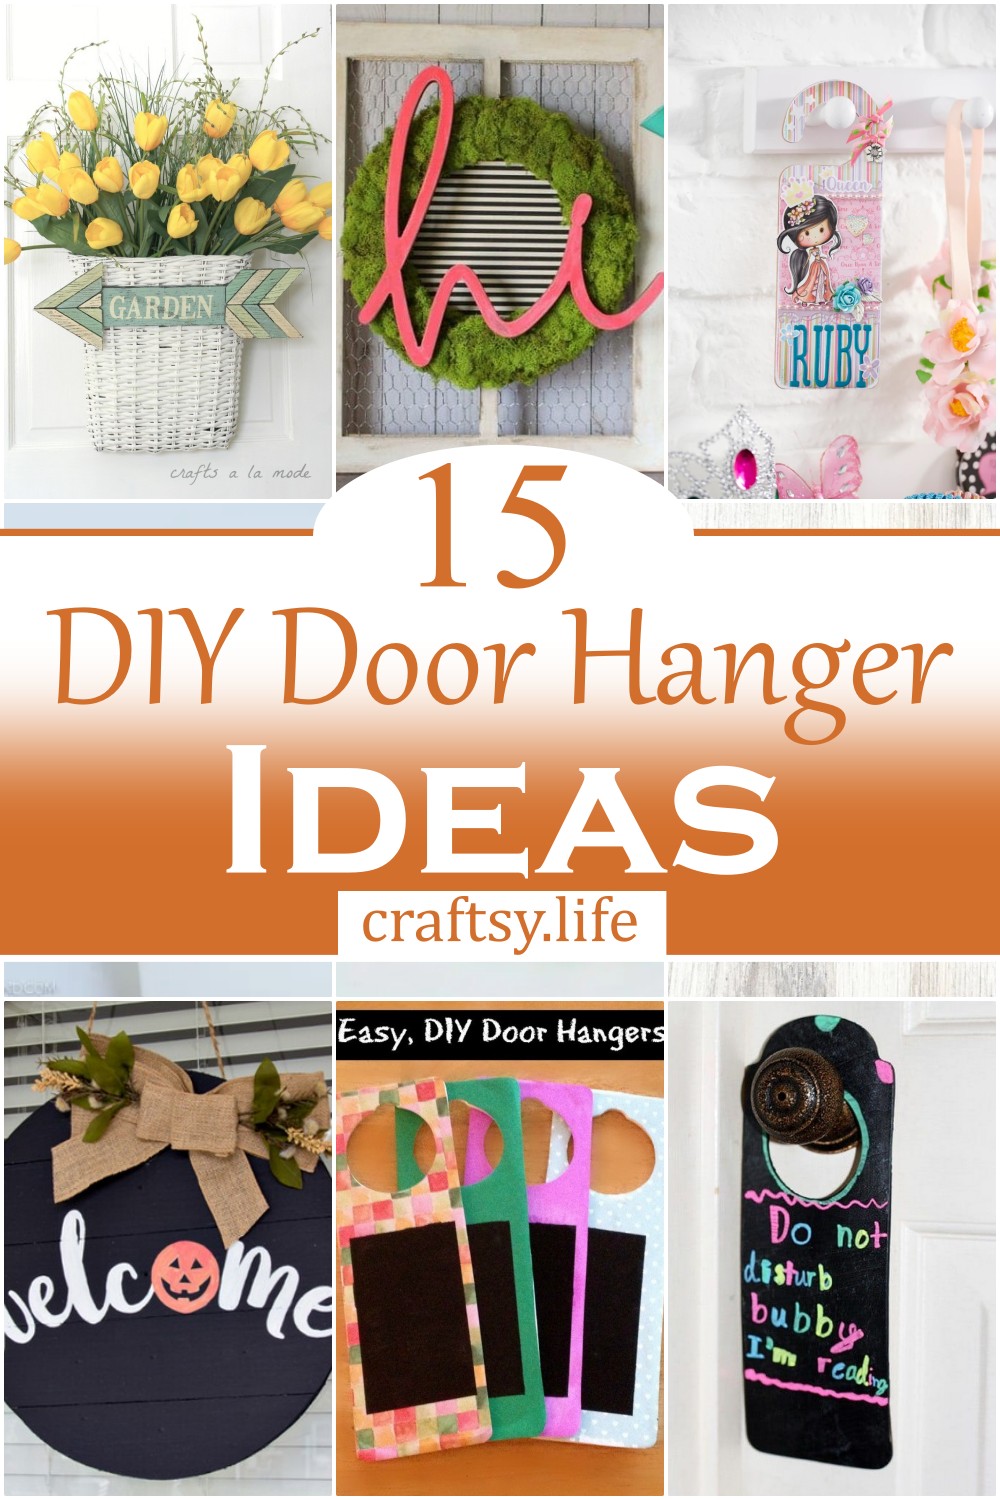 DIY Door Hanger Ideas